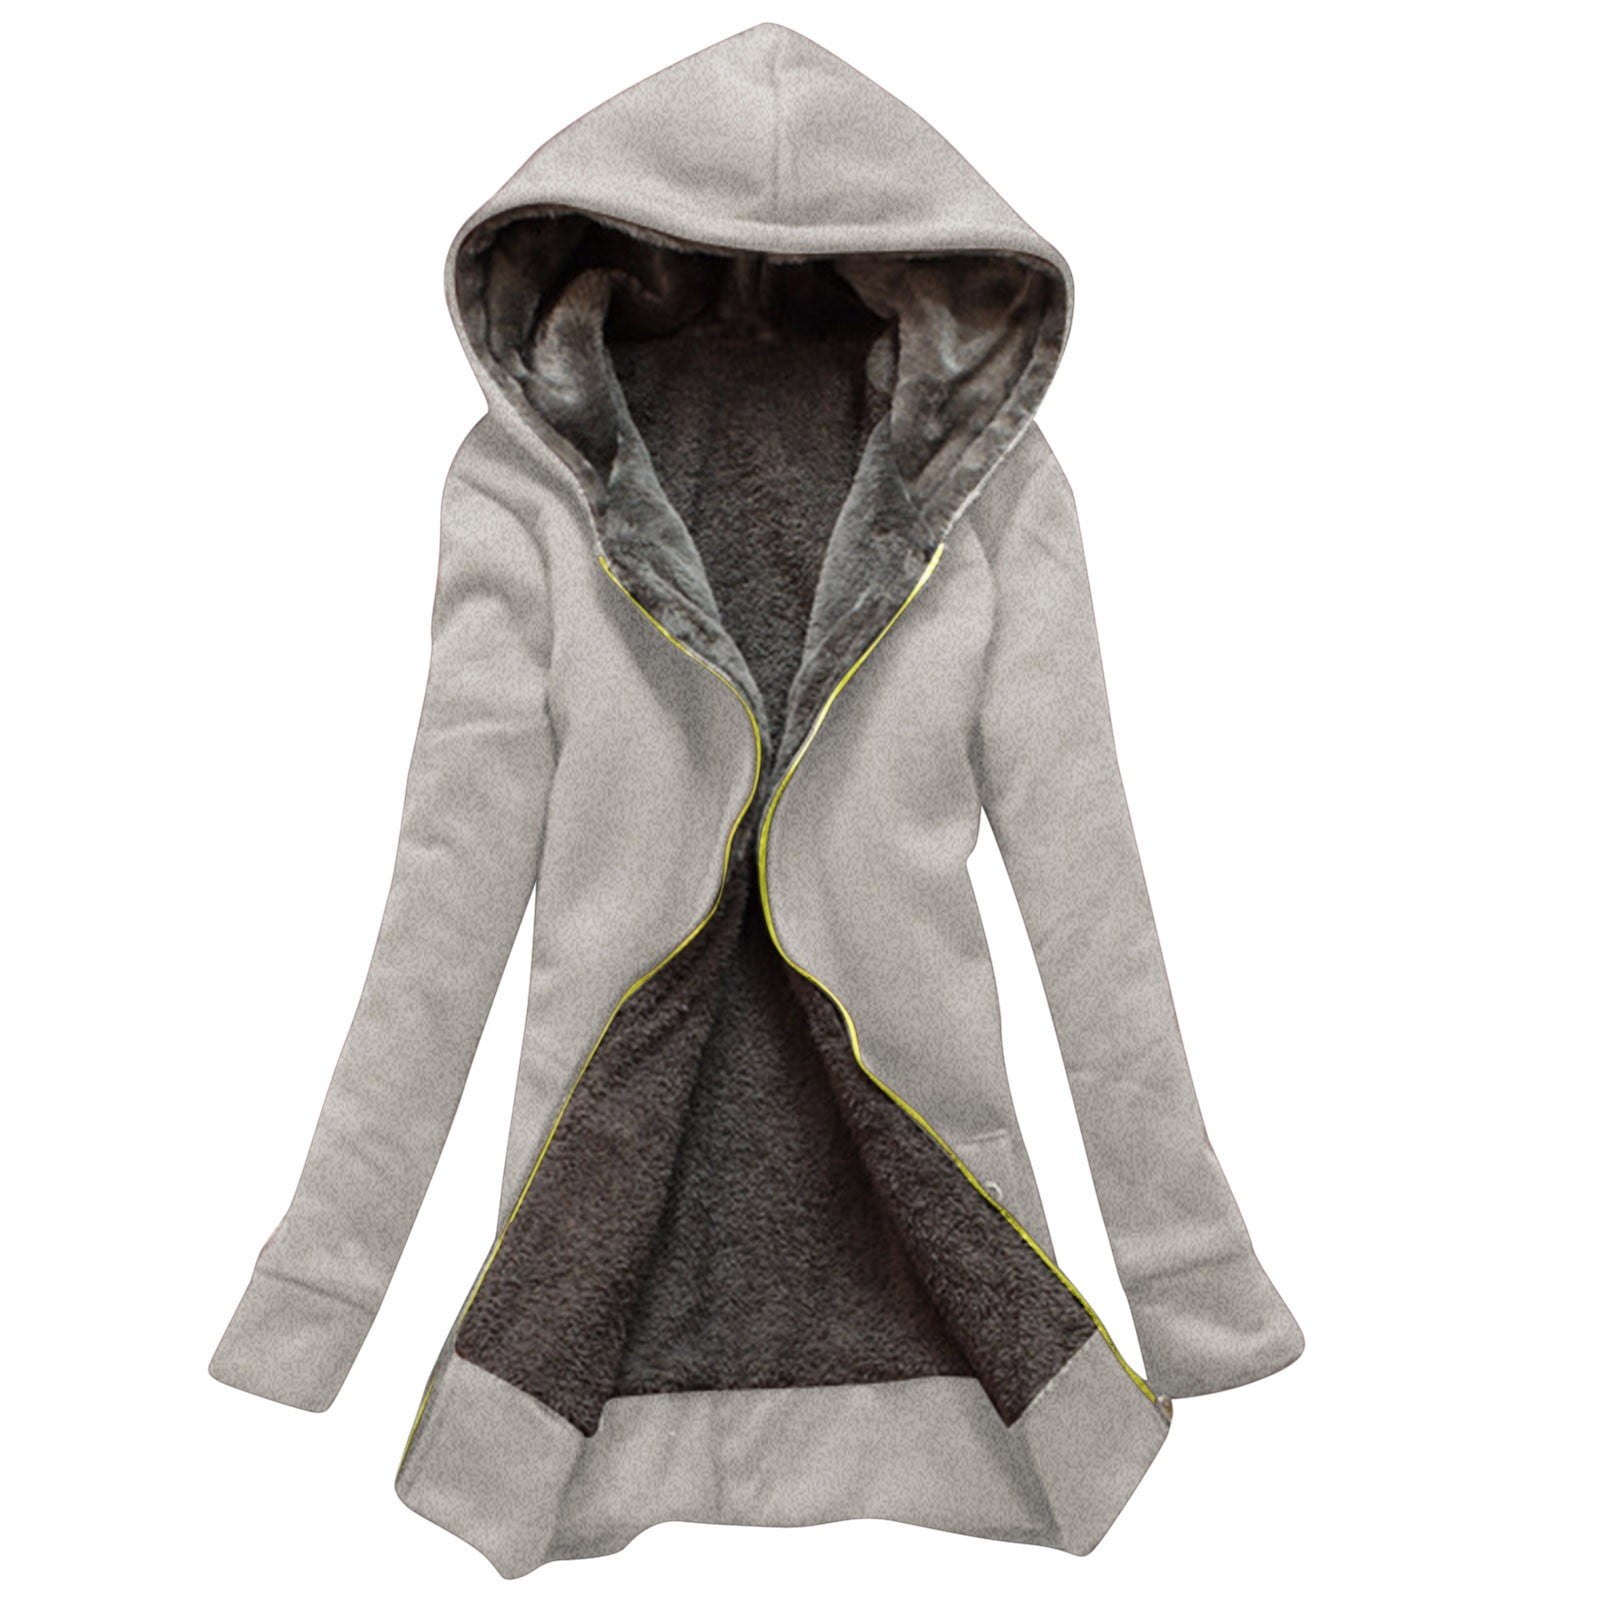 TAIAOJING Women's Oversized Long Sleeve Shacket Jacket Winter Sherpa Lined Zip Hooded Sweatshirt Jacket Coat -